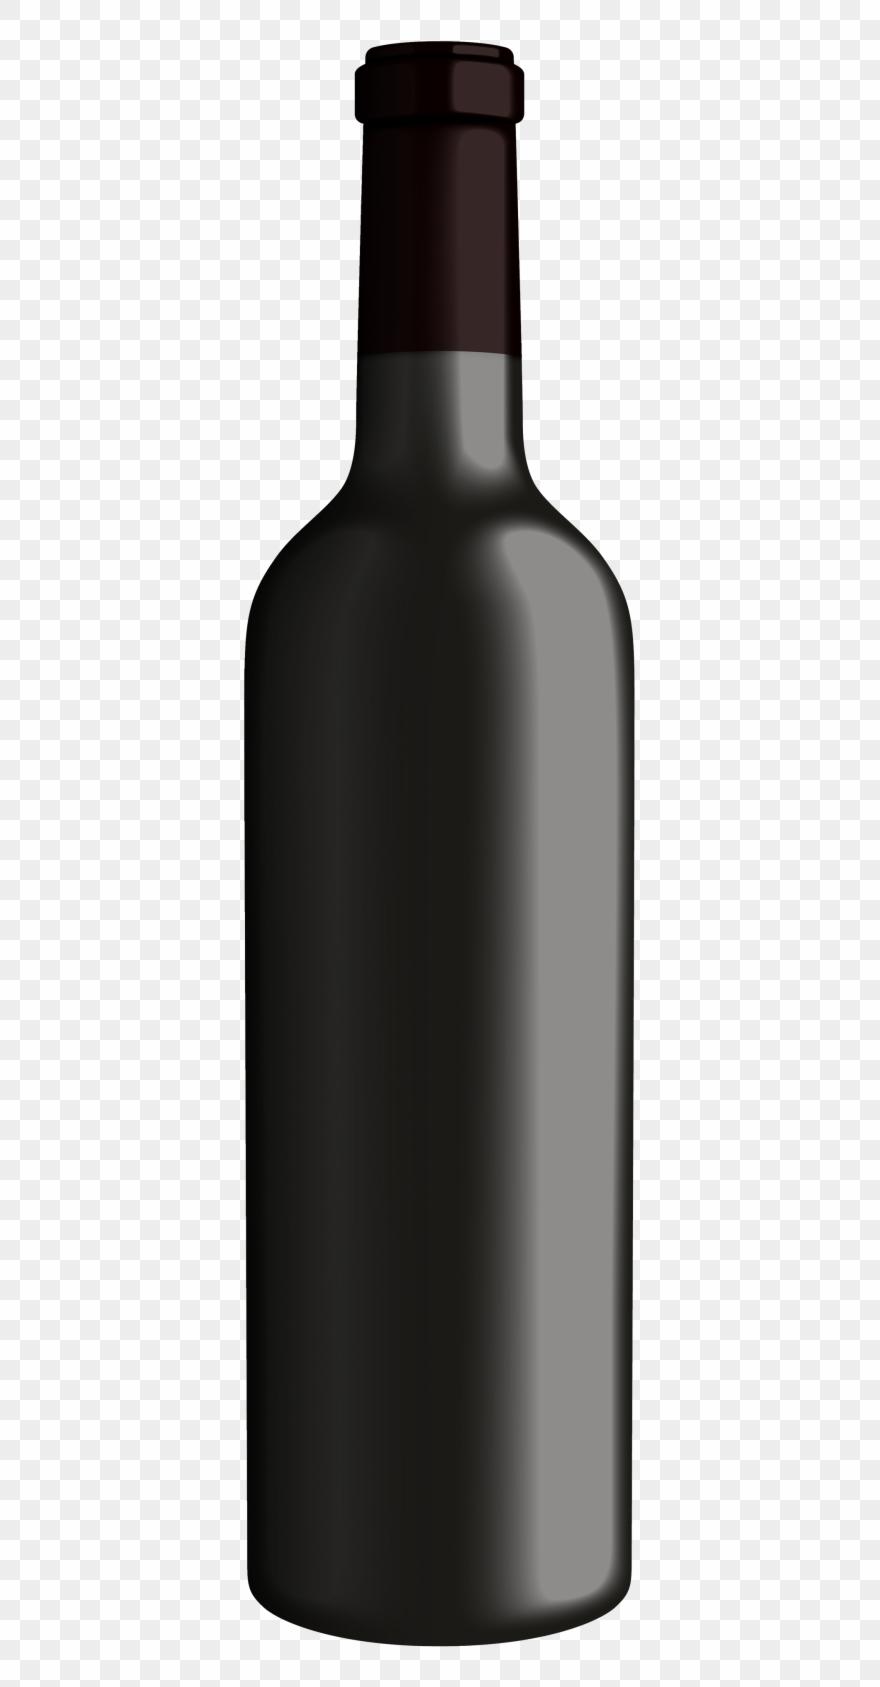 Wine bottle silhouette.